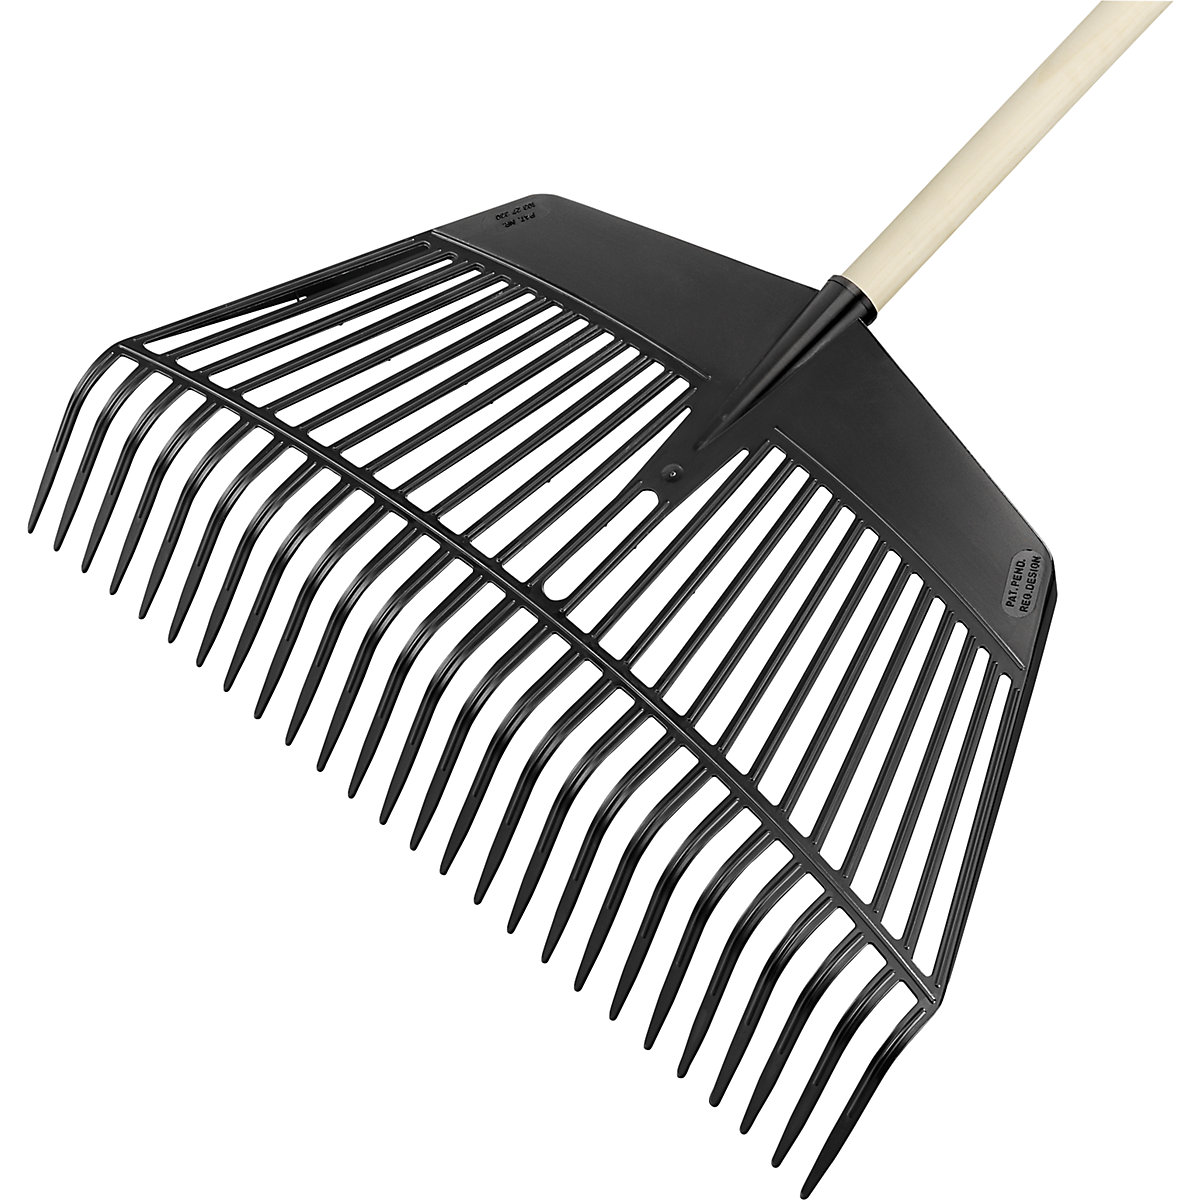 Combination leaf rake and shovel – FLORA